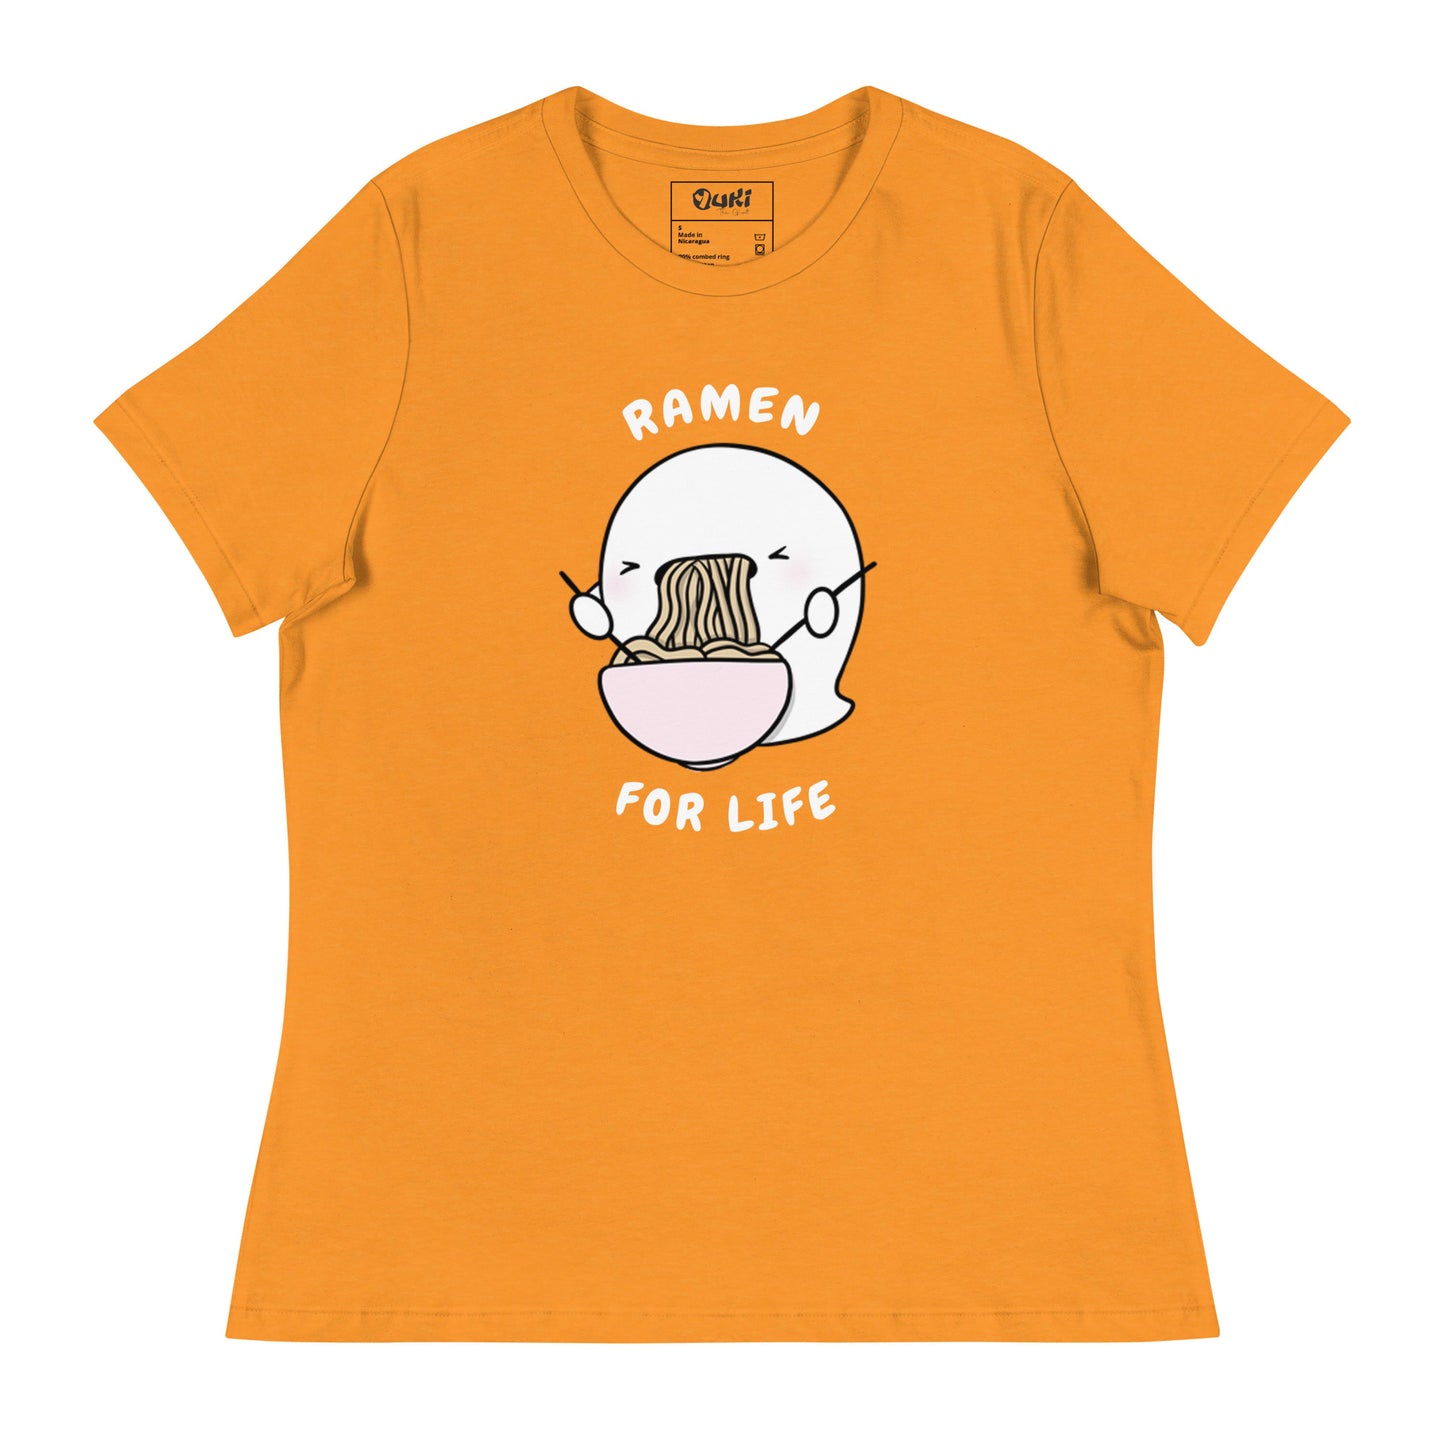 Ramen for life - Women's Relaxed T-Shirt